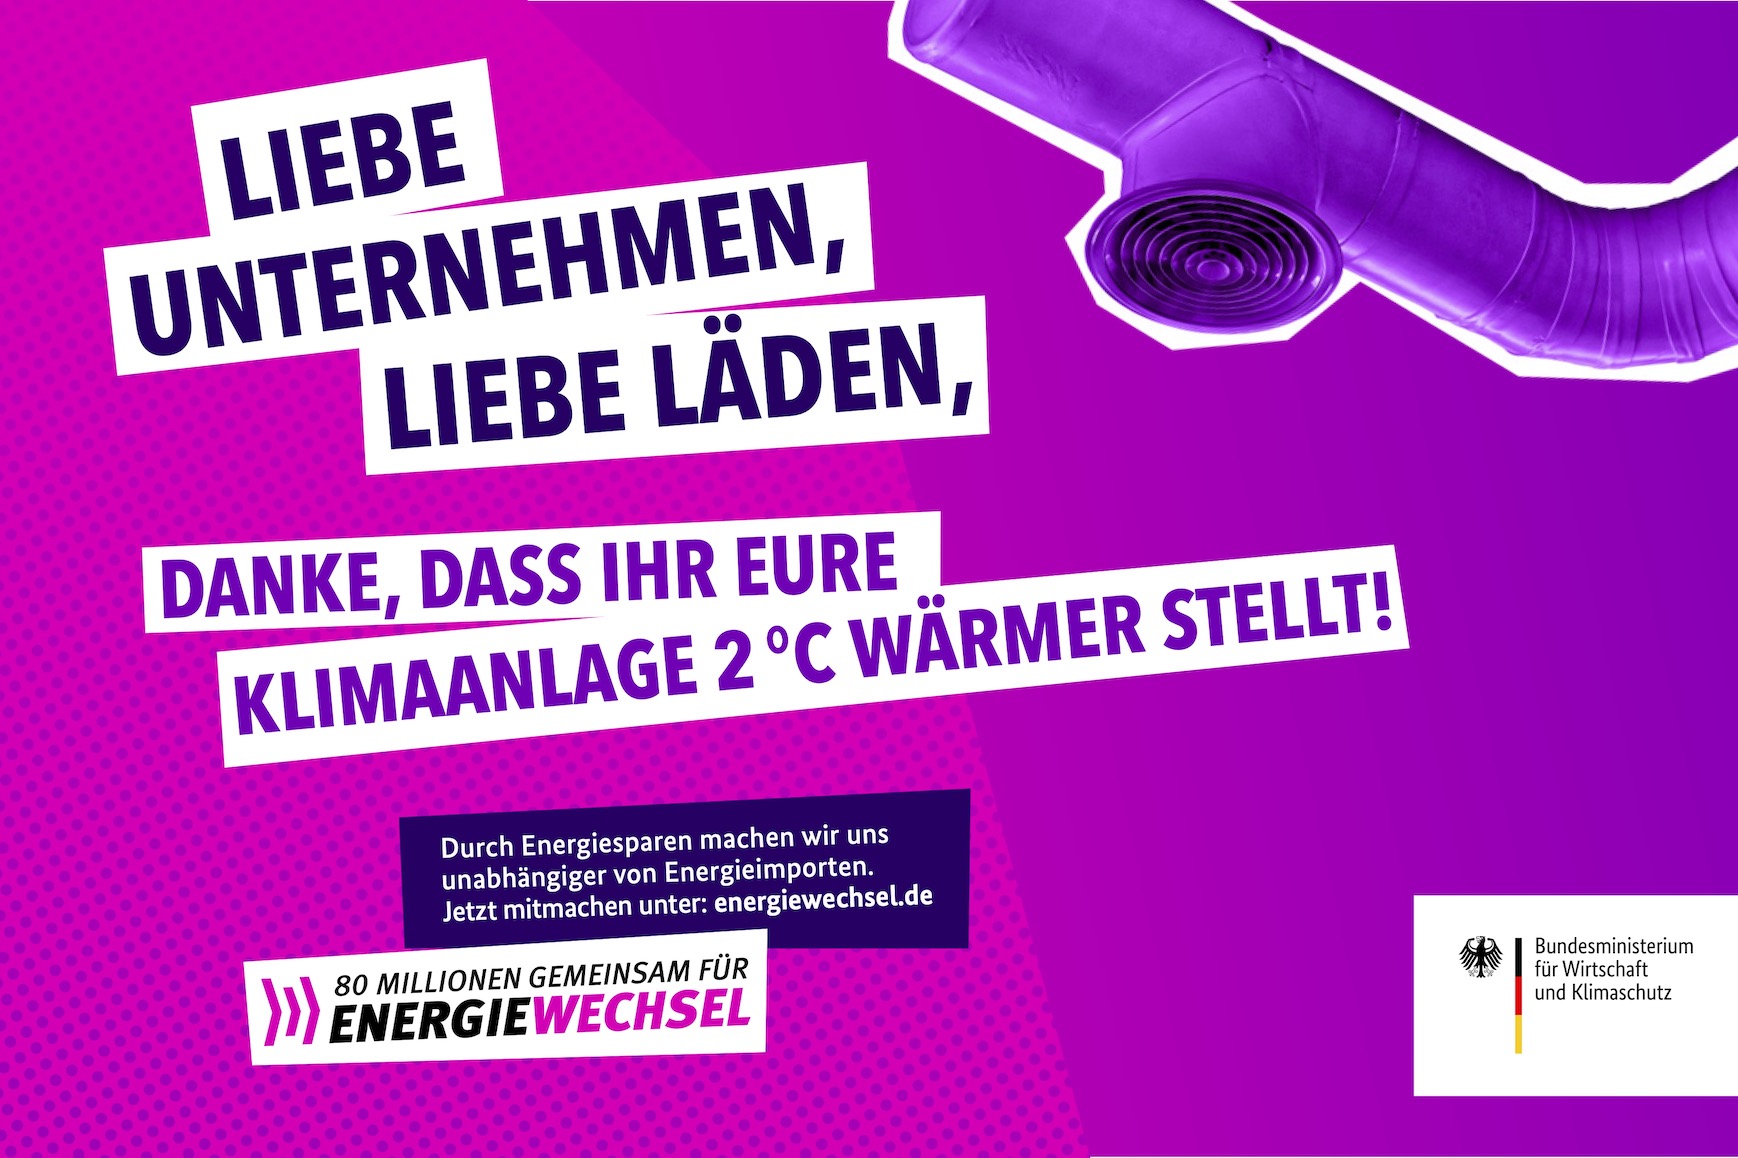 Kampagnenmotiv „Liebe Unternehmen, liebe Läden” | 80 Millionen gemeinsam für Energiewechsel